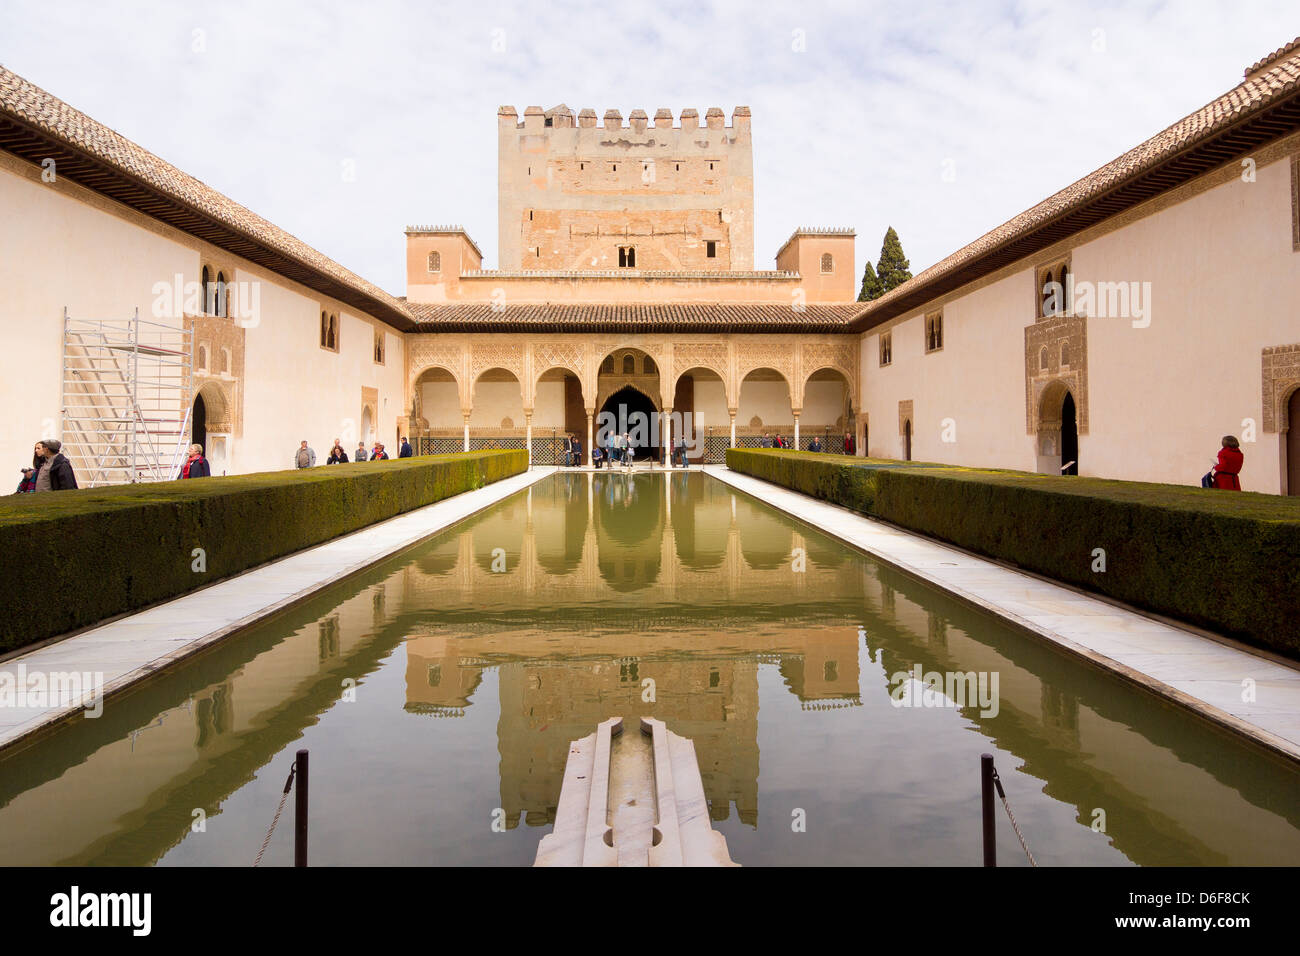 La Cour des Myrtes, Patio de los Arrayanes, Comores Palace, palais Nasrides, Alhambra, Granada, Espagne Banque D'Images